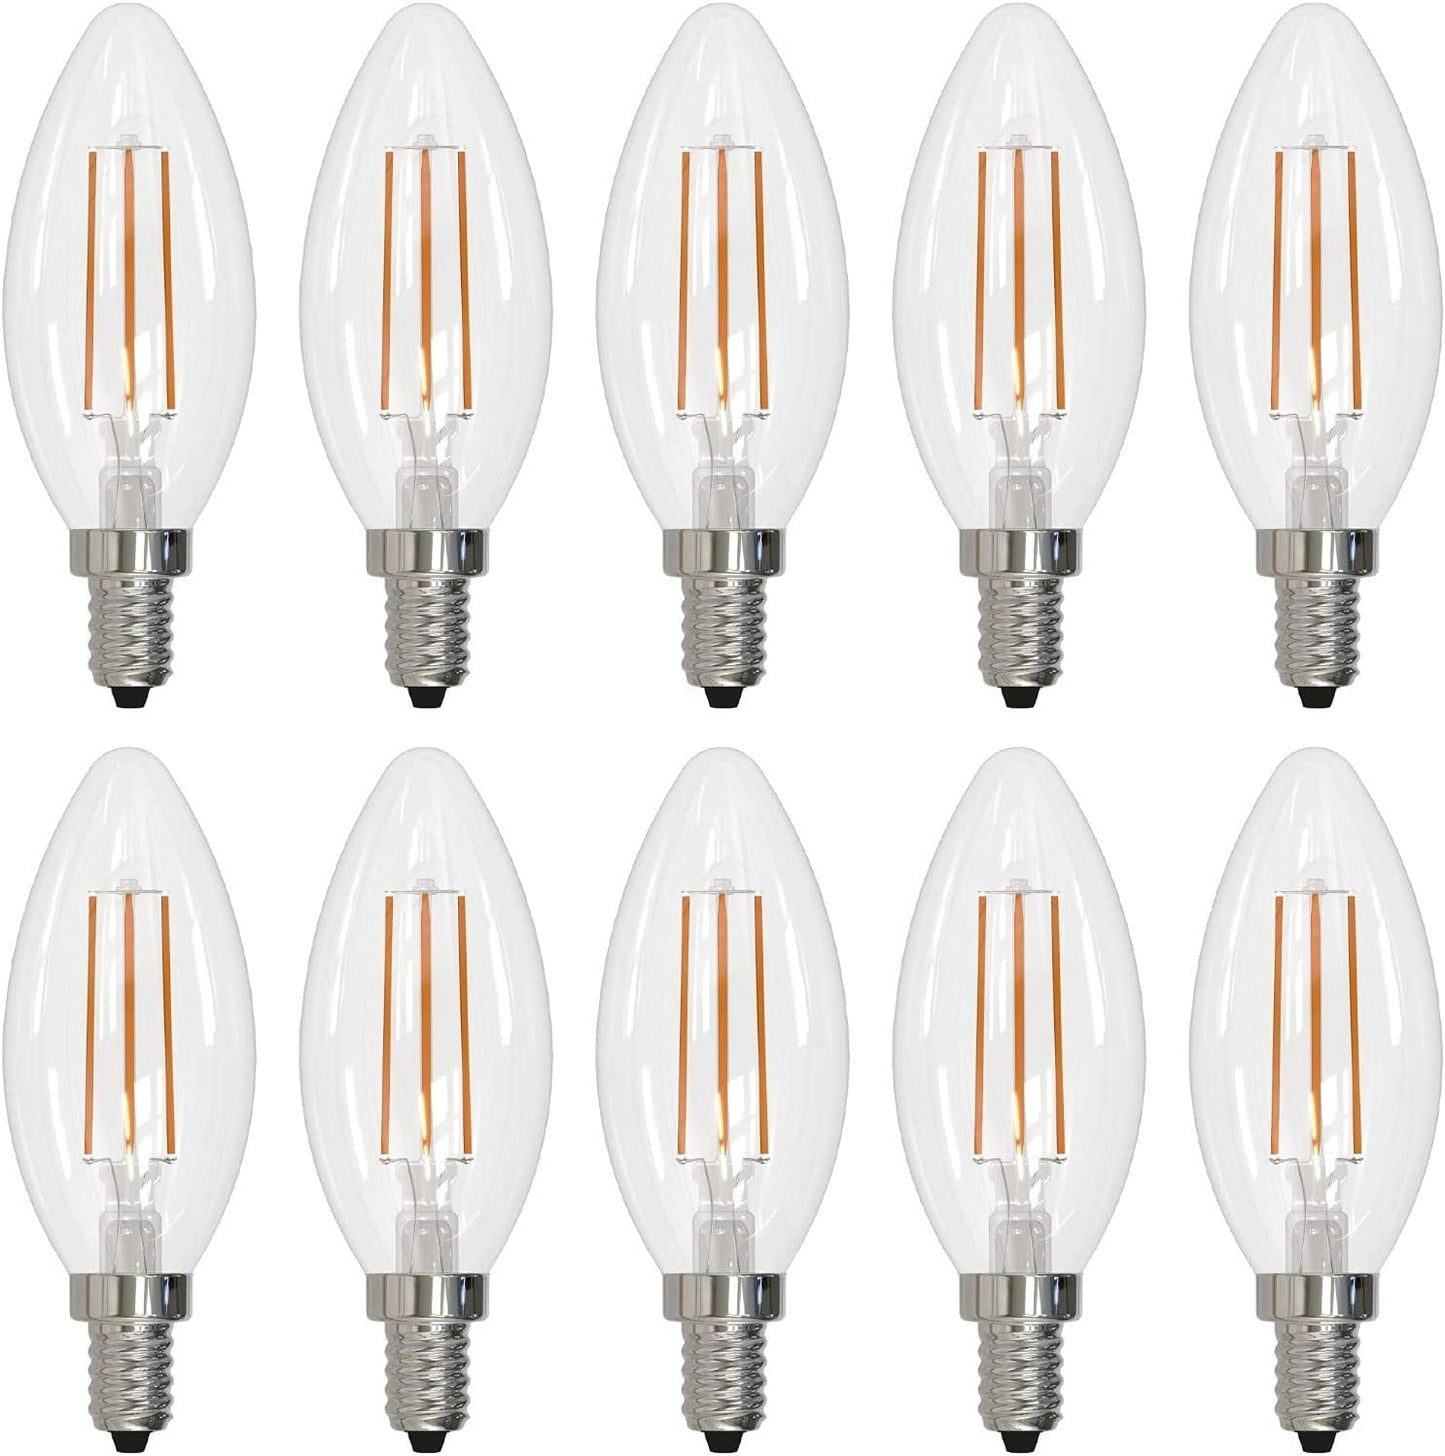 Bulbrite (Pack of 10) Item 776626, High Lumen Higher Equivalency, 5 Watt Clear B11 LED Filament Light Bulb, E12 Candelabra Base, 2700K 500 Lumens, LED5B11/27K/FIL/E12/3 10-Pack